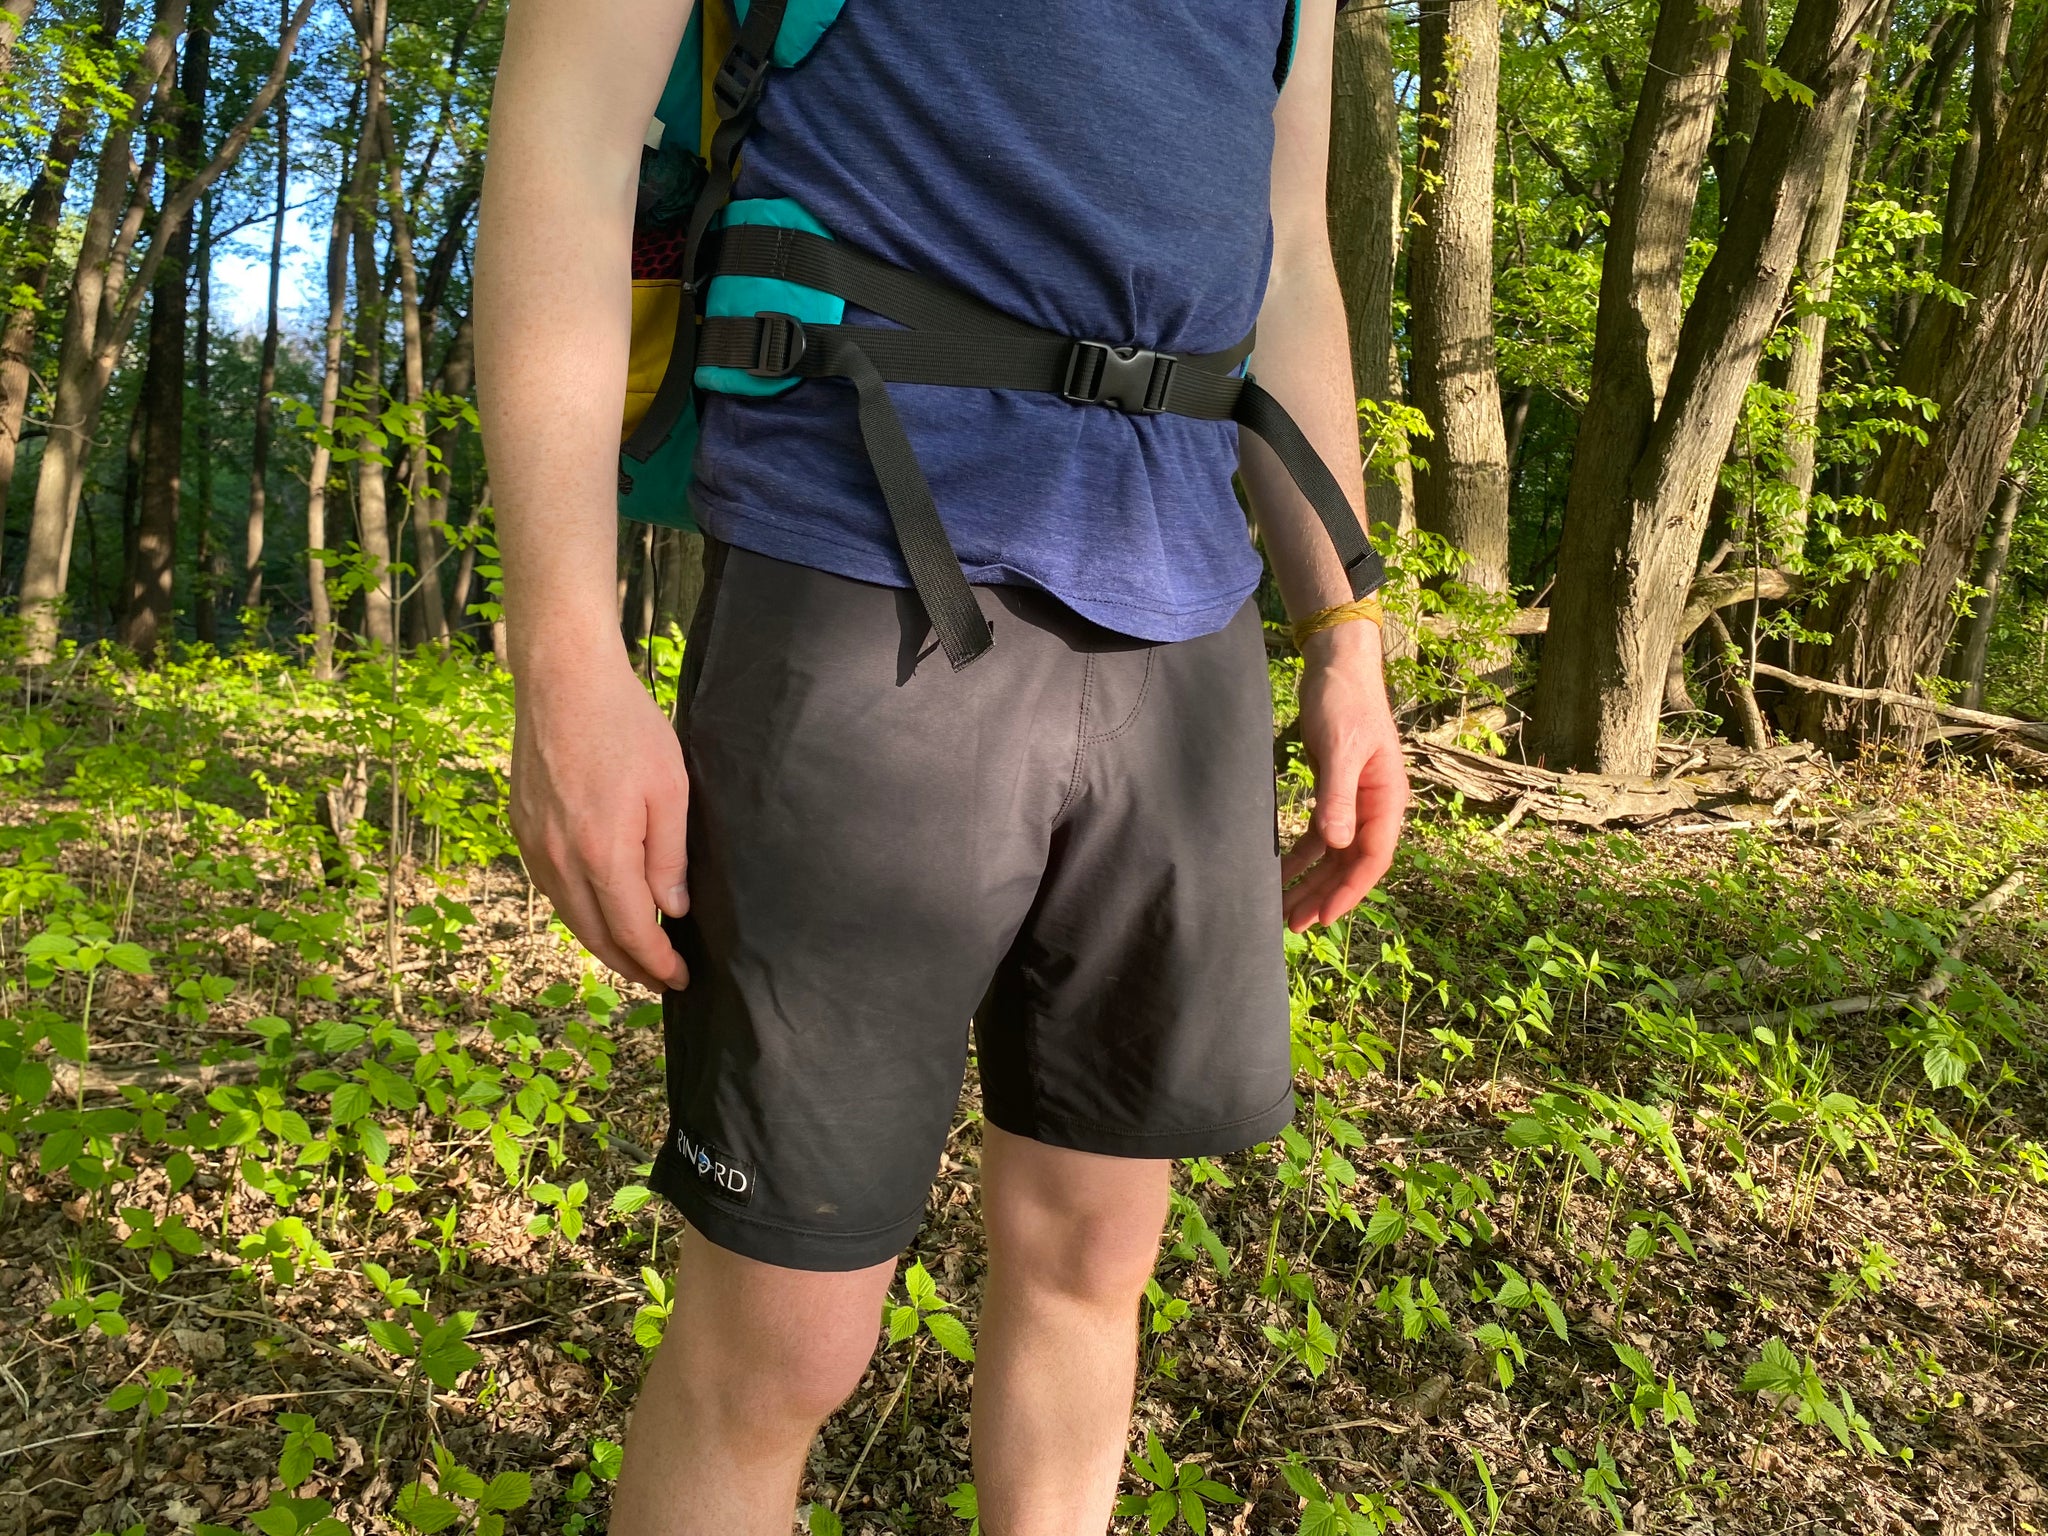 Rinord Hiking Shorts Review – Garage Grown Gear